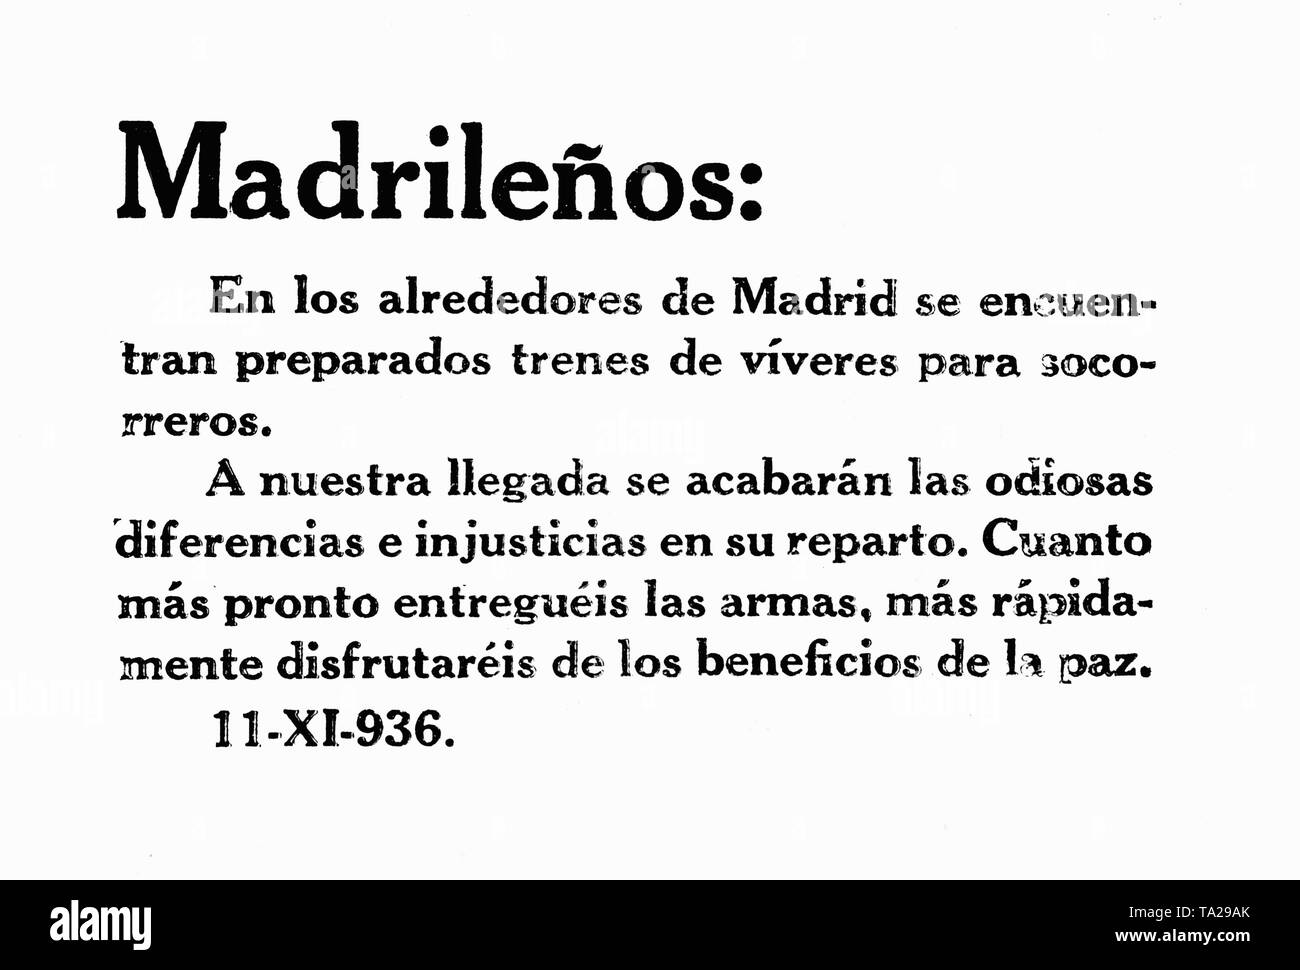 Drucken eines spanischen nationalen Broschüre über die belagerte Madrid am 11. November 1936 zu werfen. Englische Übersetzung: "Bürger von Madrid: In der Nachbarschaft, gibt es Züge, die Nahrung für die Hilfe zur Verfügung stellen. Bei unserer Ankunft in Madrid, das Hässliche und abscheuliche kämpft und Ungerechtigkeiten aufhören zu passieren. Je früher Sie Ihre Arme nach unten stellen, desto eher sind Sie in der Lage, die Absenkung von Frieden zu genießen." Seit Oktober 1936, General Francisco Franco versucht hatte, Madrid mit seinen Truppen zu erobern. Am 8. November, General Emilio Mola angegriffen Madrid direkt mit seinen Truppen und belagerte die Hauptstadt. Stockfoto